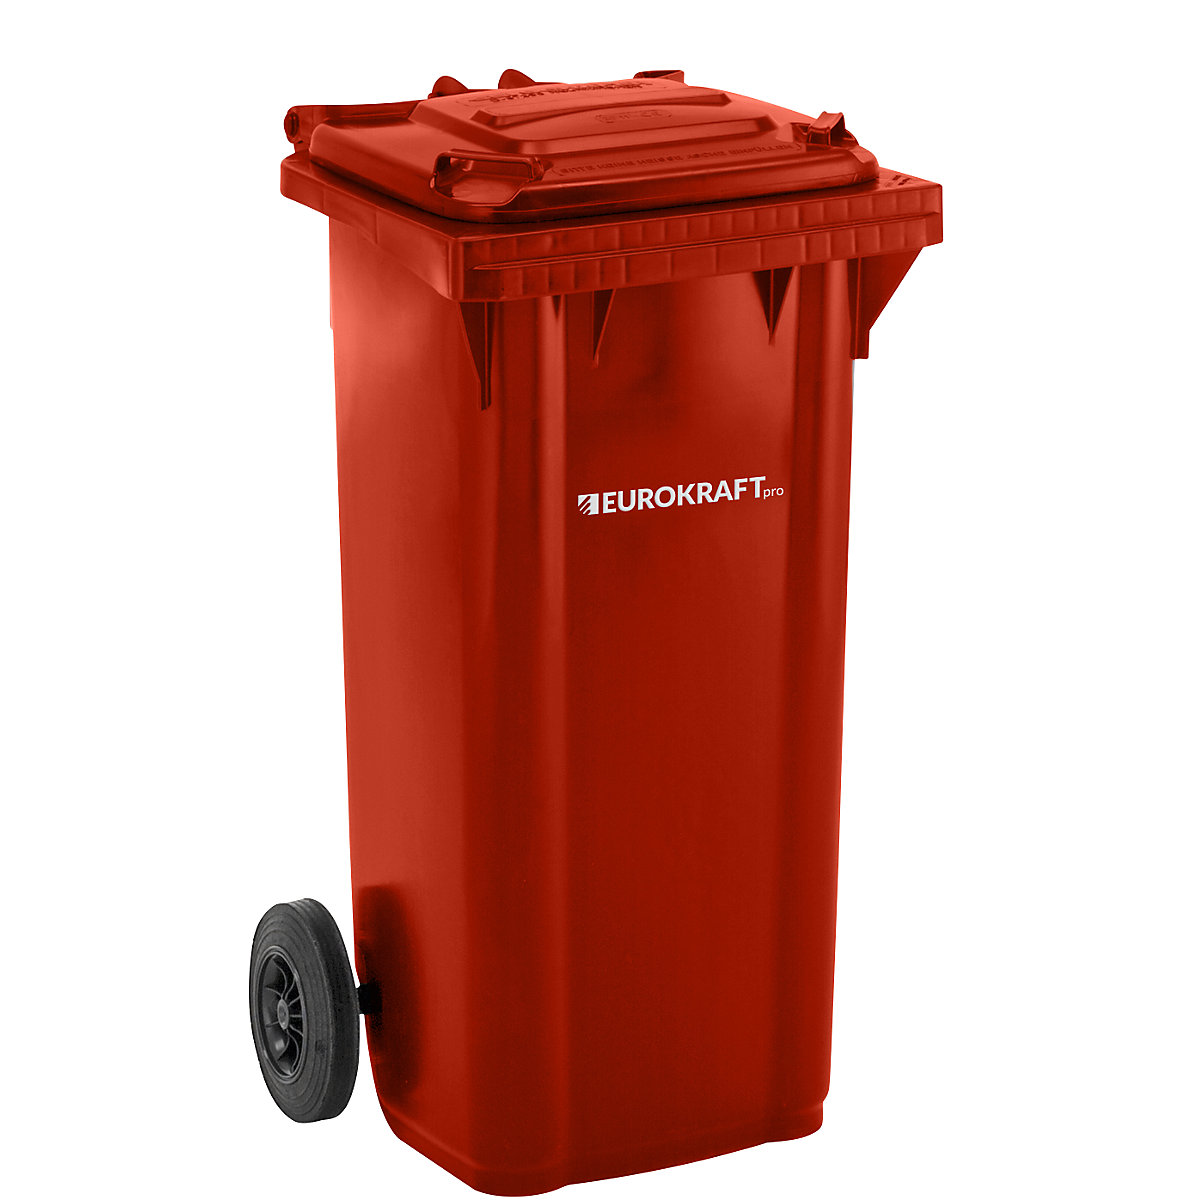 Mülltonne aus Kunststoff DIN EN 840 eurokraft pro, Volumen 120 l, BxHxT 505 x 1005 x 555 mm, rot-6